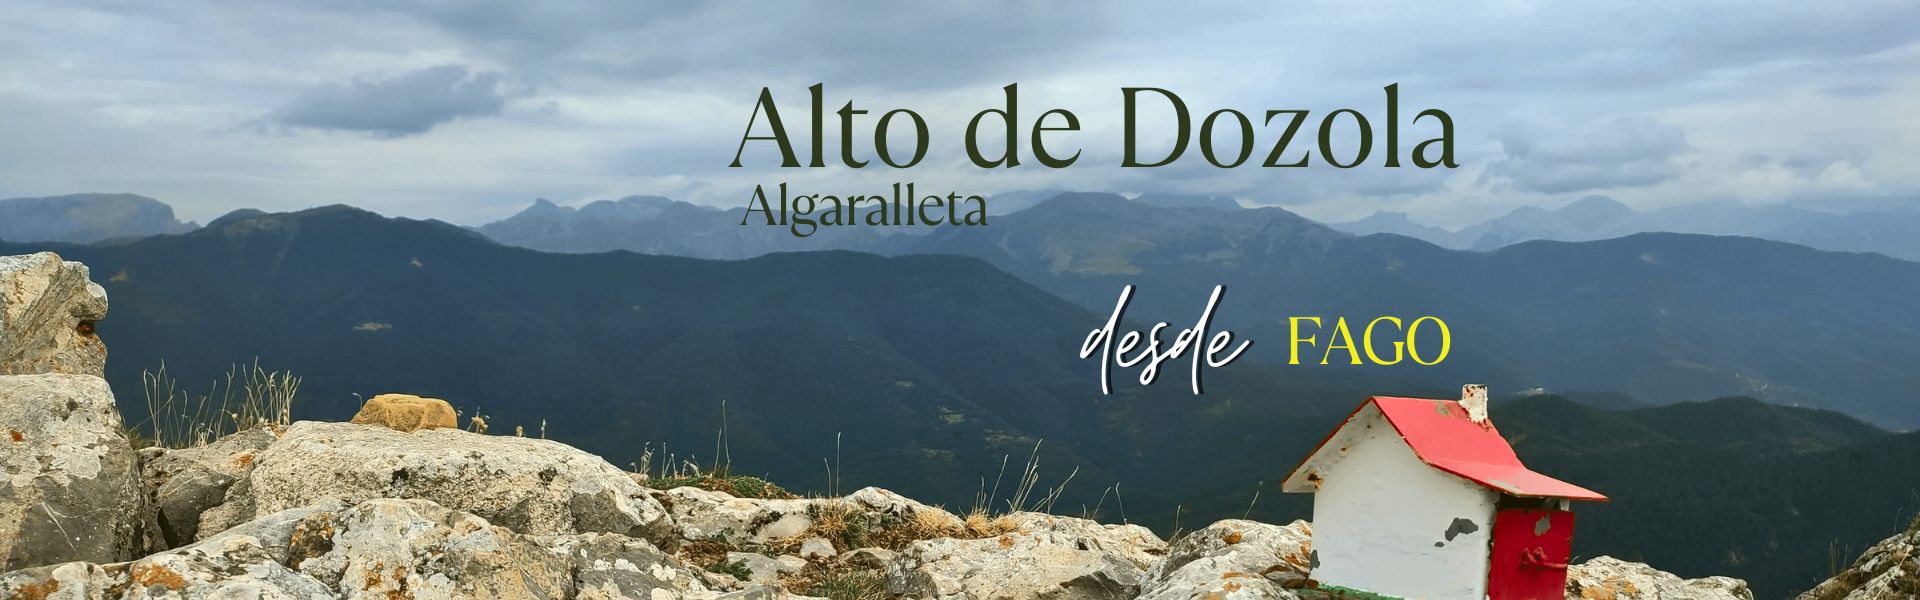 Alto de Dozola – Algaralleta